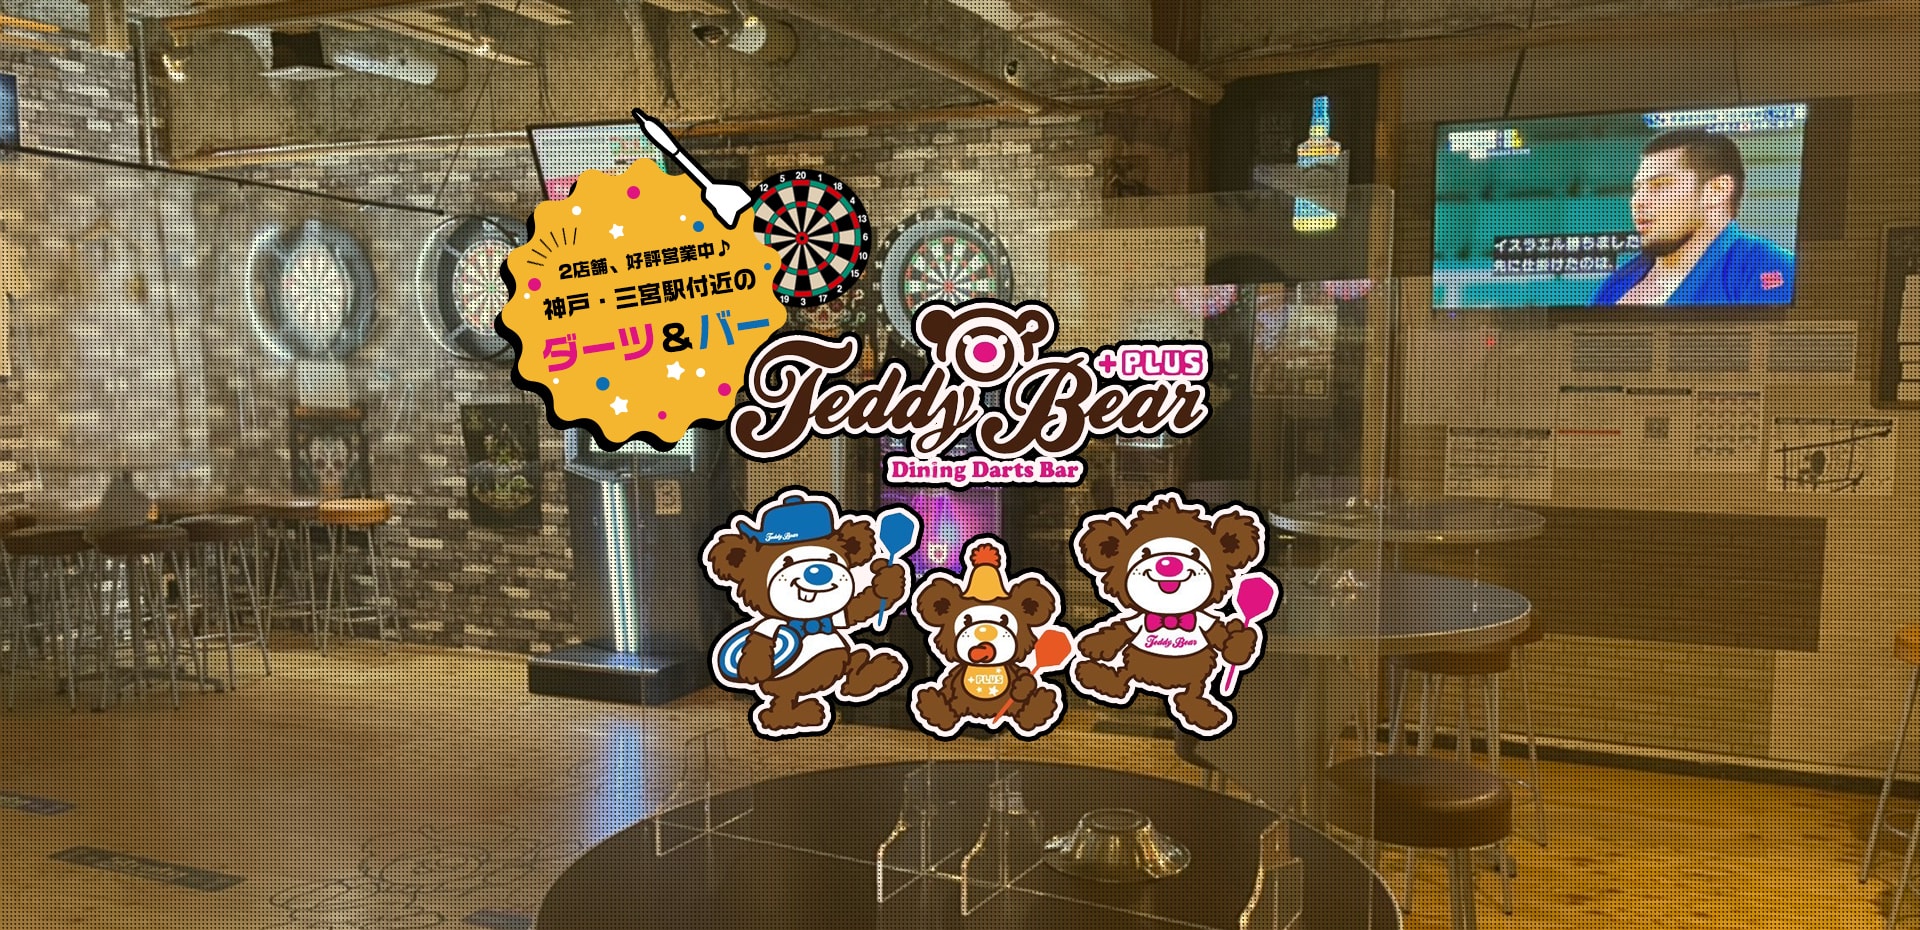 2店舗、好評営業中♪神戸・三宮駅付近のダーツ&バー Dining Darts Bar Teddy Bear PLUS